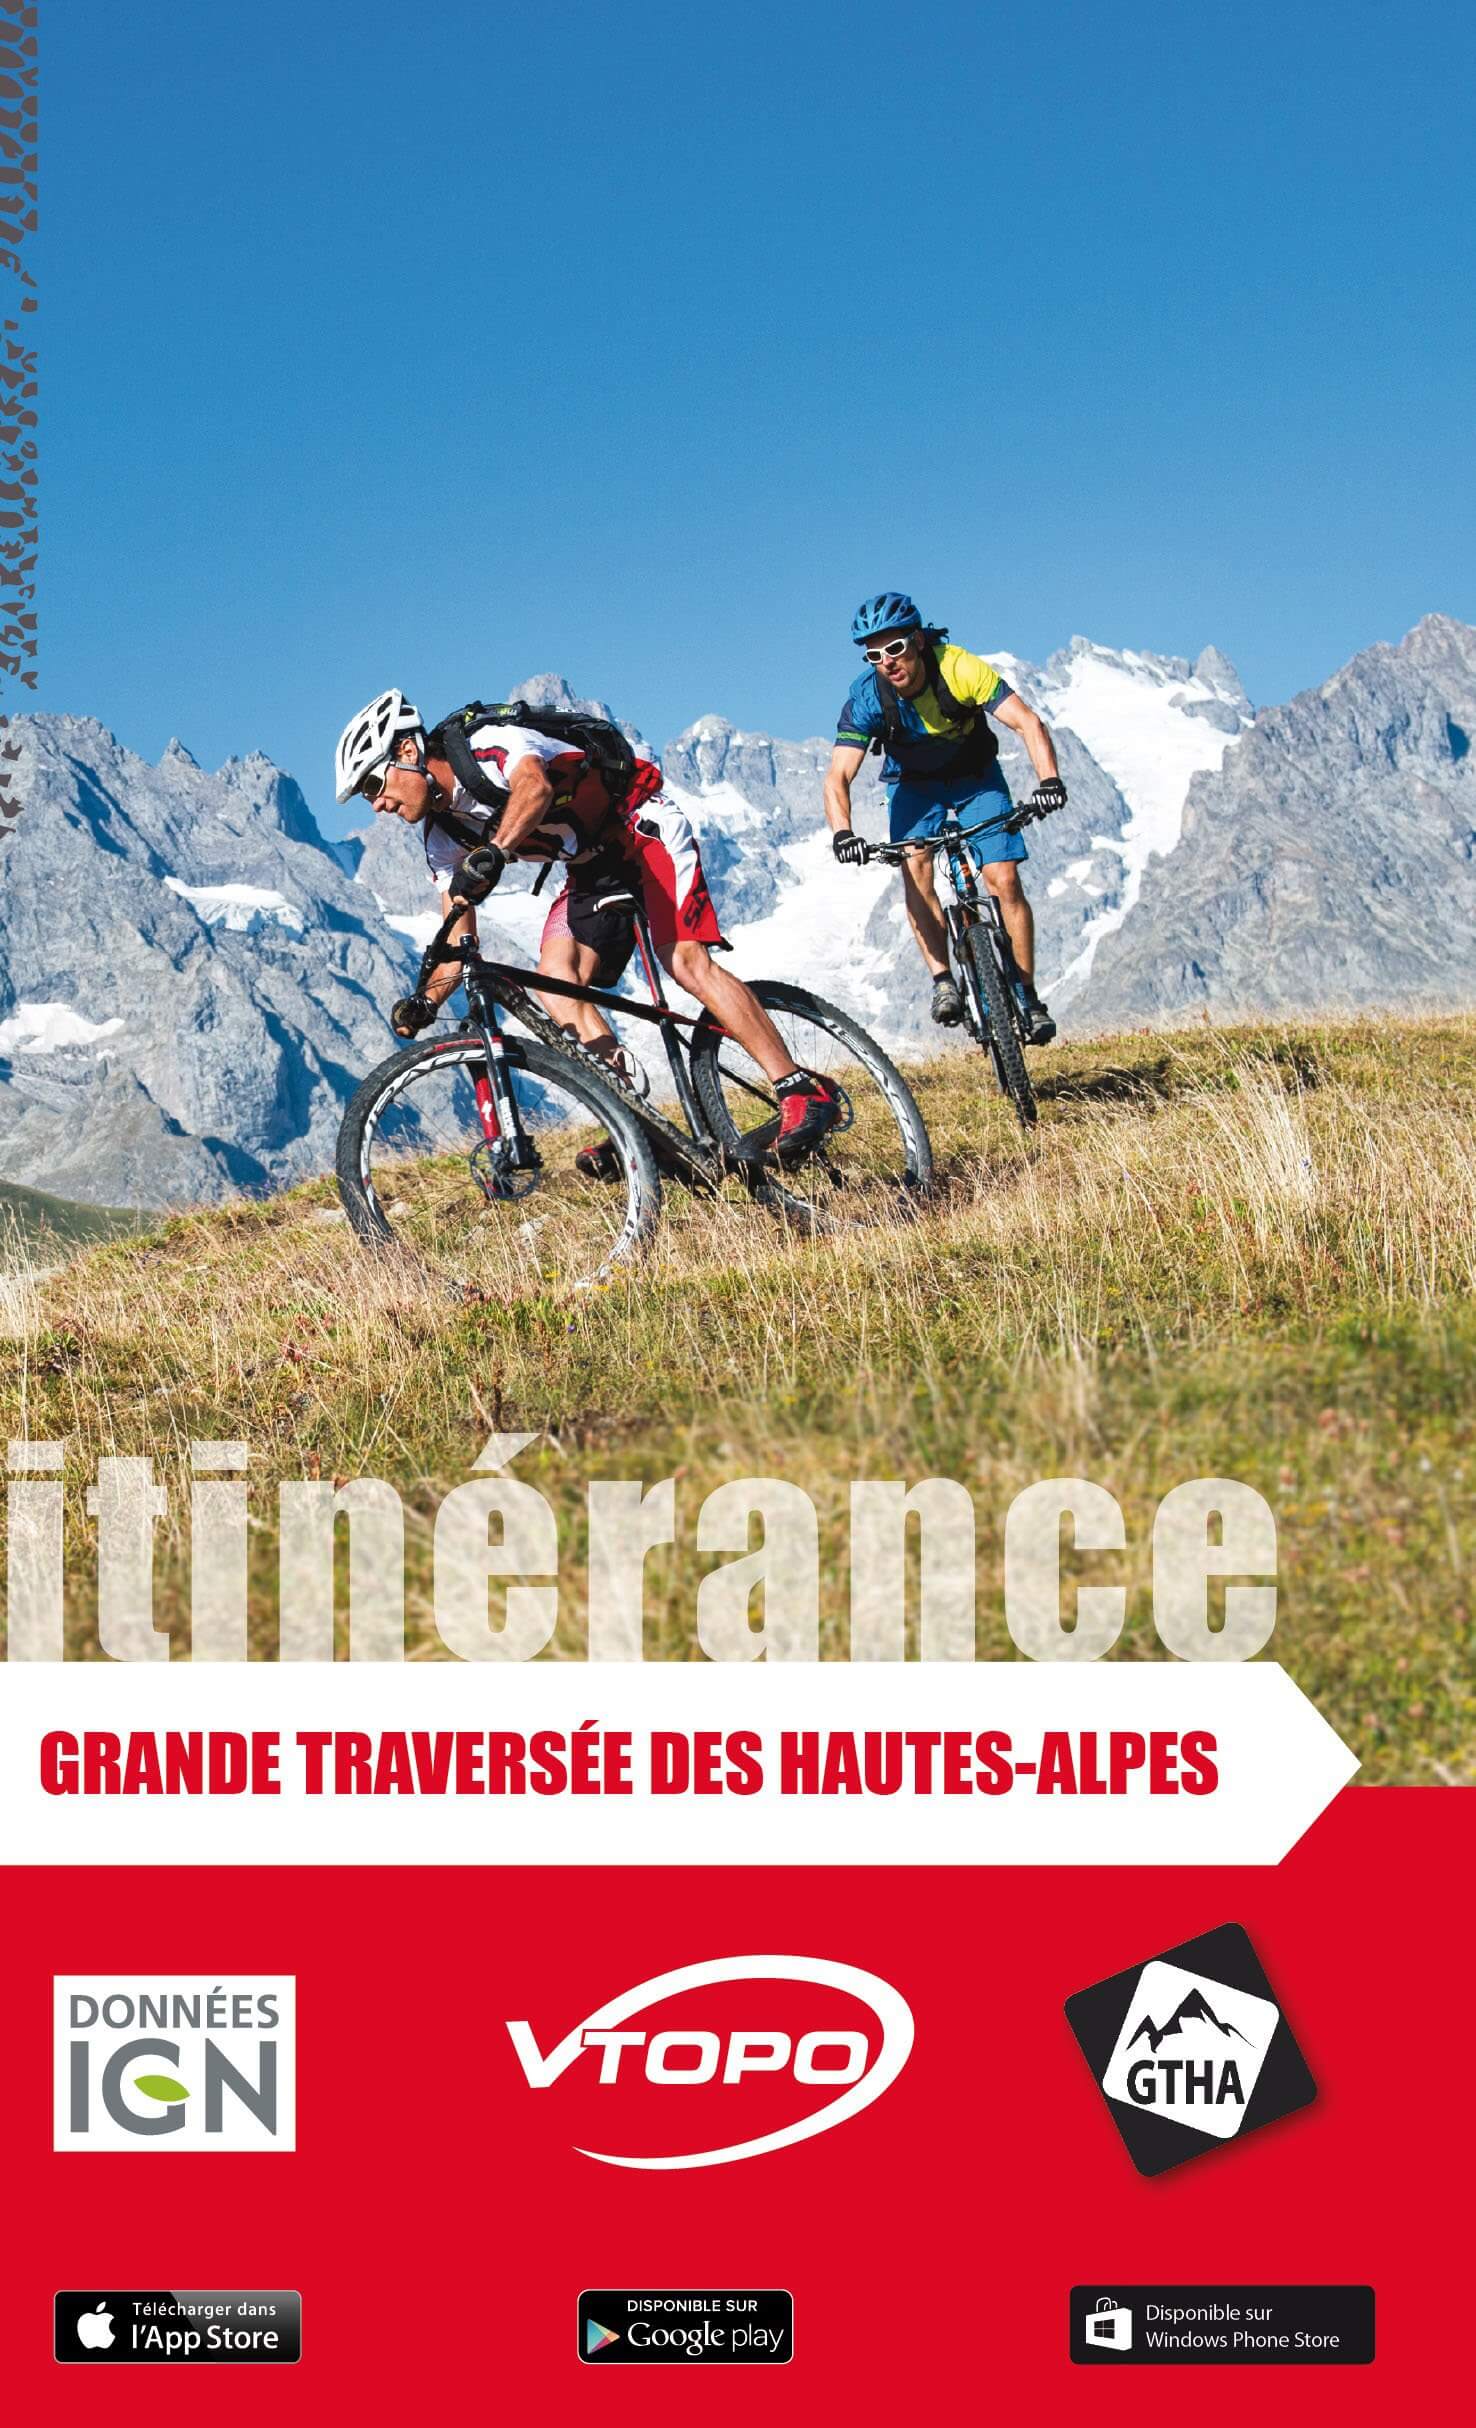 Grande traversée des Hautes-Alpes itinérance - Vtopo